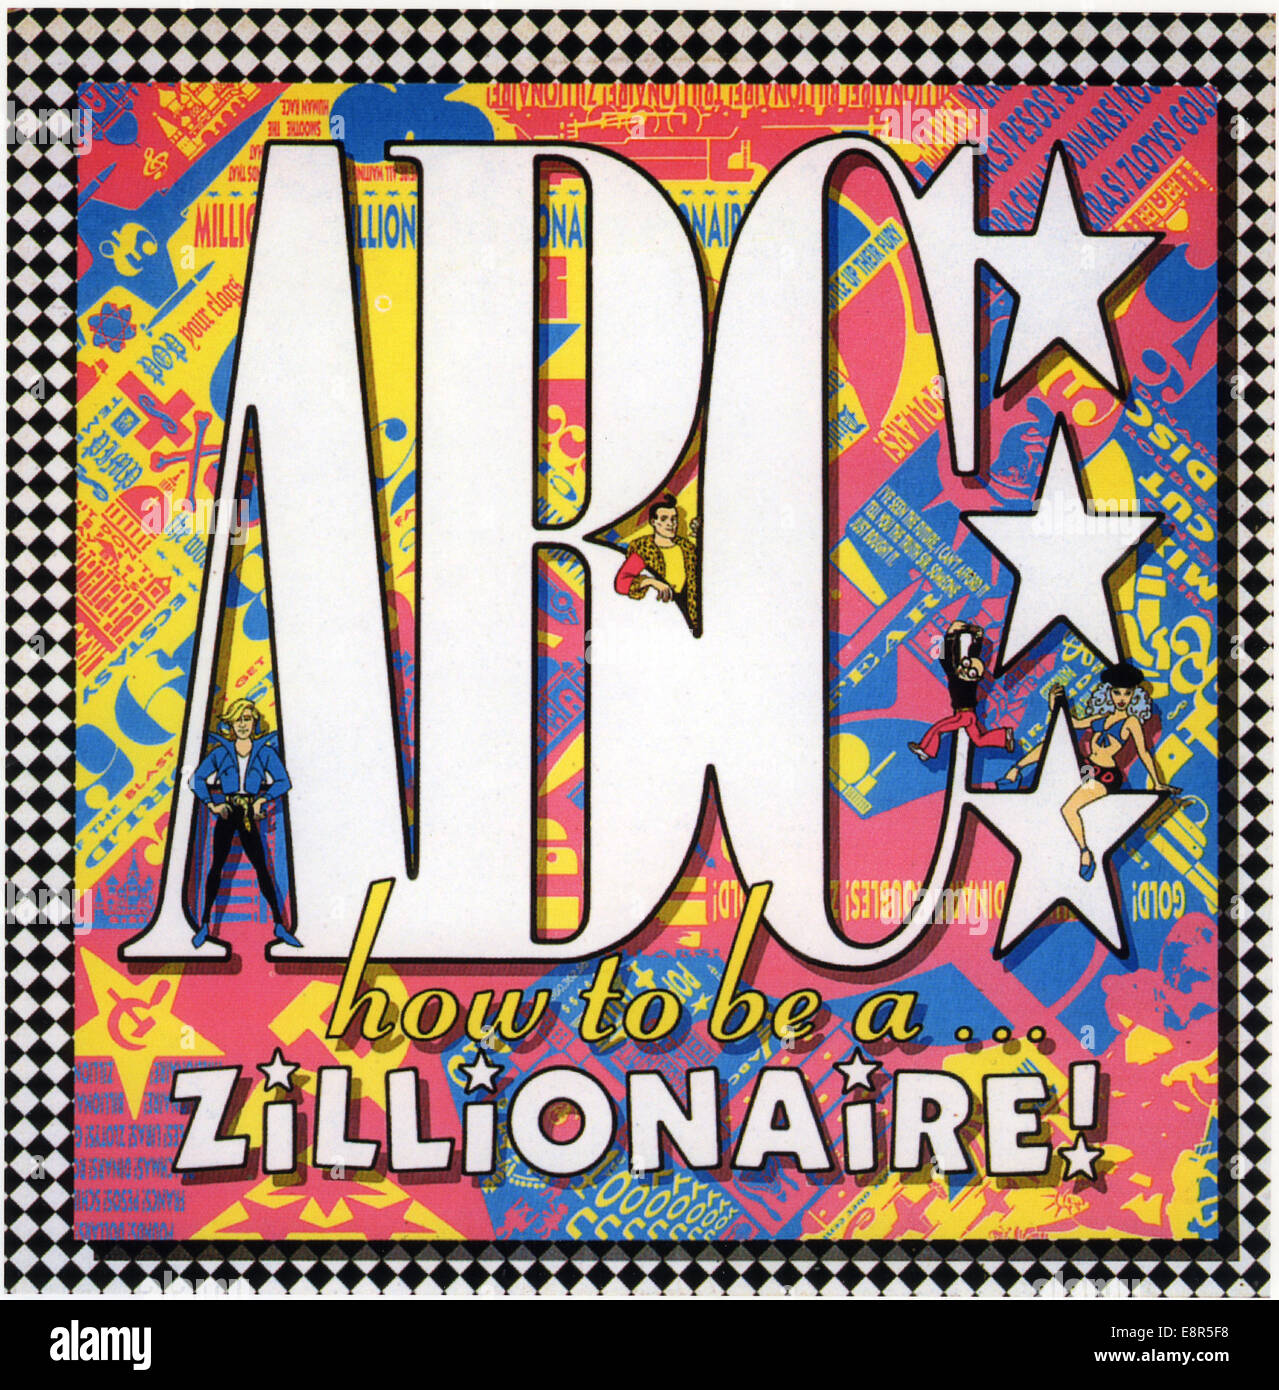 ABC DEL REGNO UNITO gruppo pop. Coperchio del 1985 album 'Come essere un zillionaire' Foto Stock